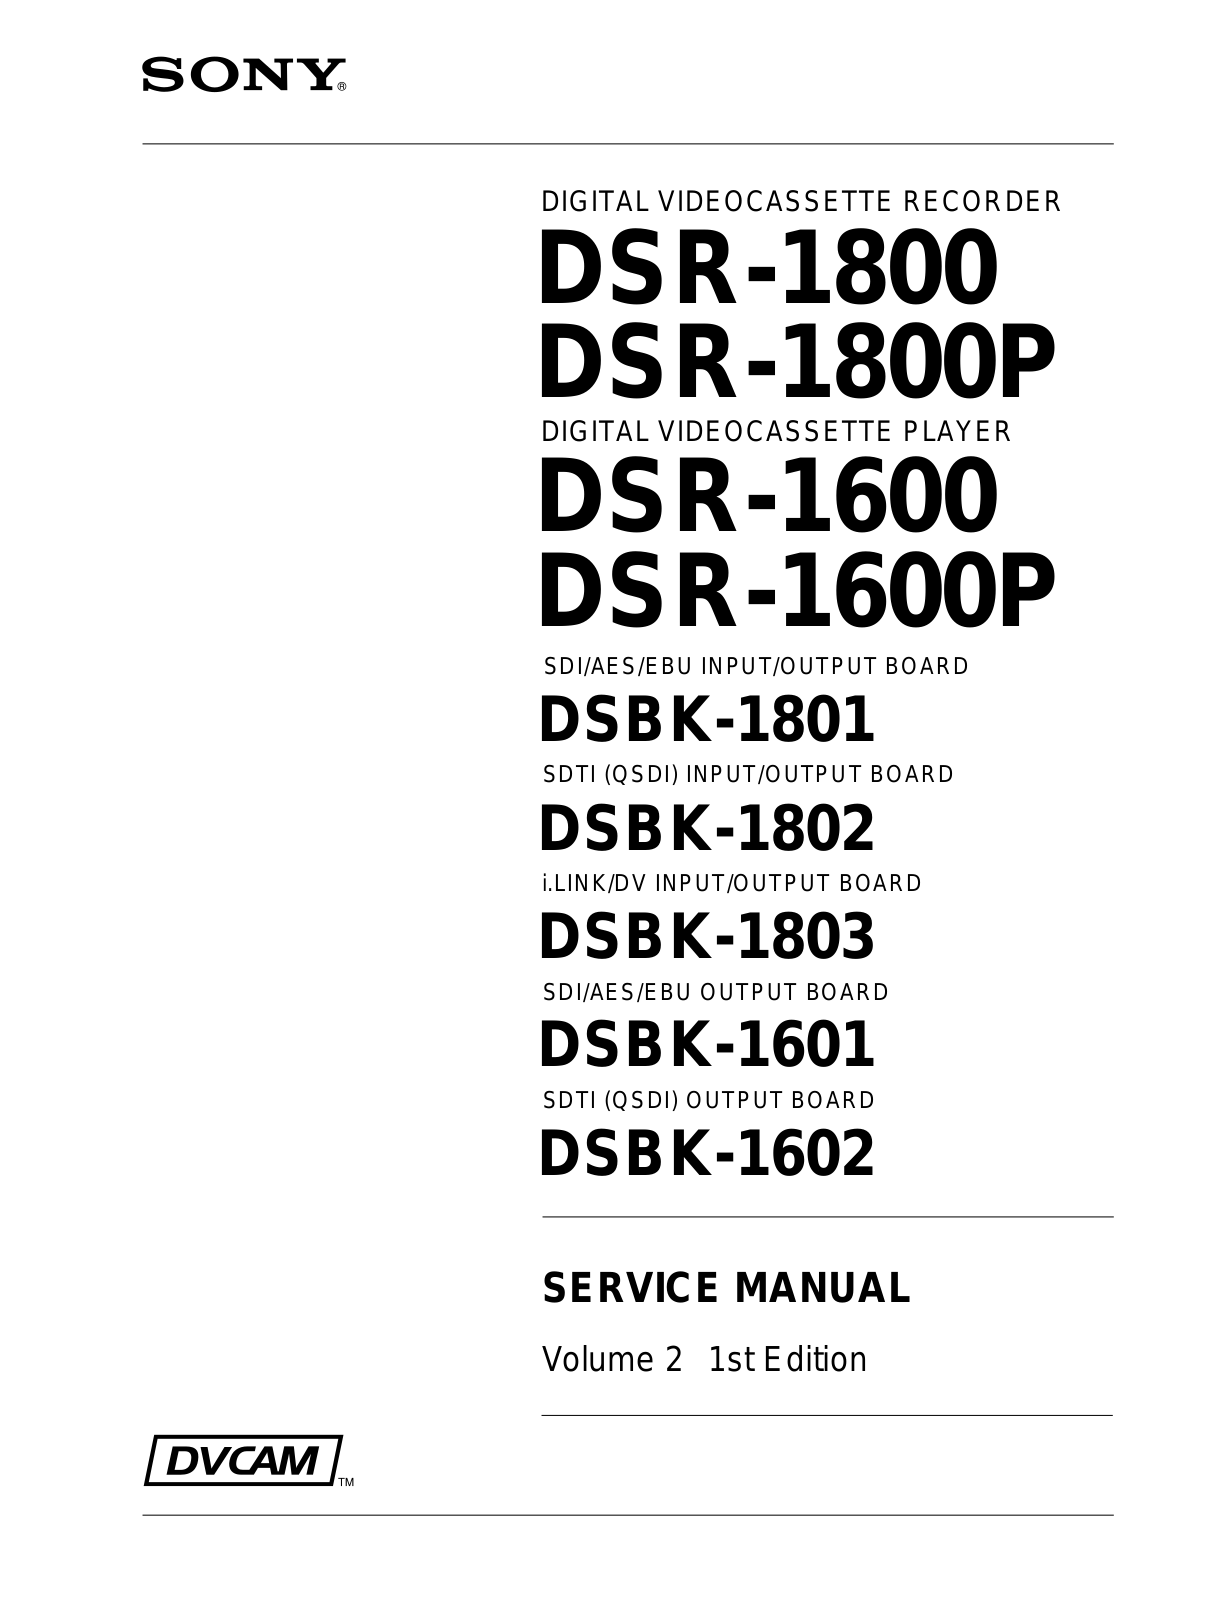 Sony DSBK-1601, DSBK-1602, DSBK-1803, DSR-1600P, DSR-1600 Service Manual